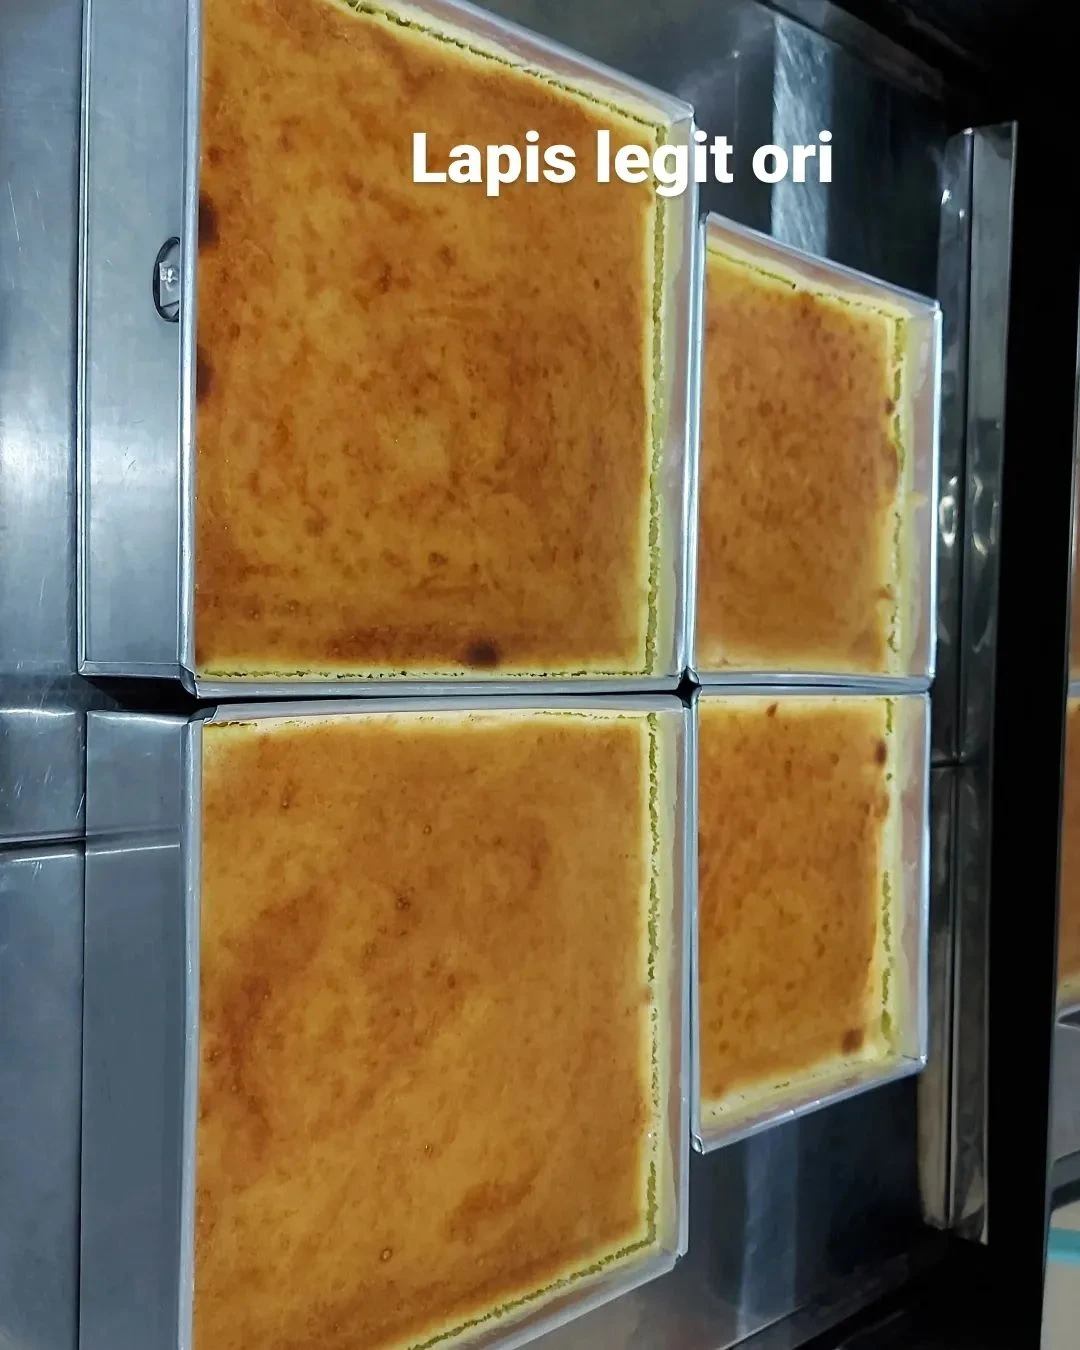 Lapis Legit Original